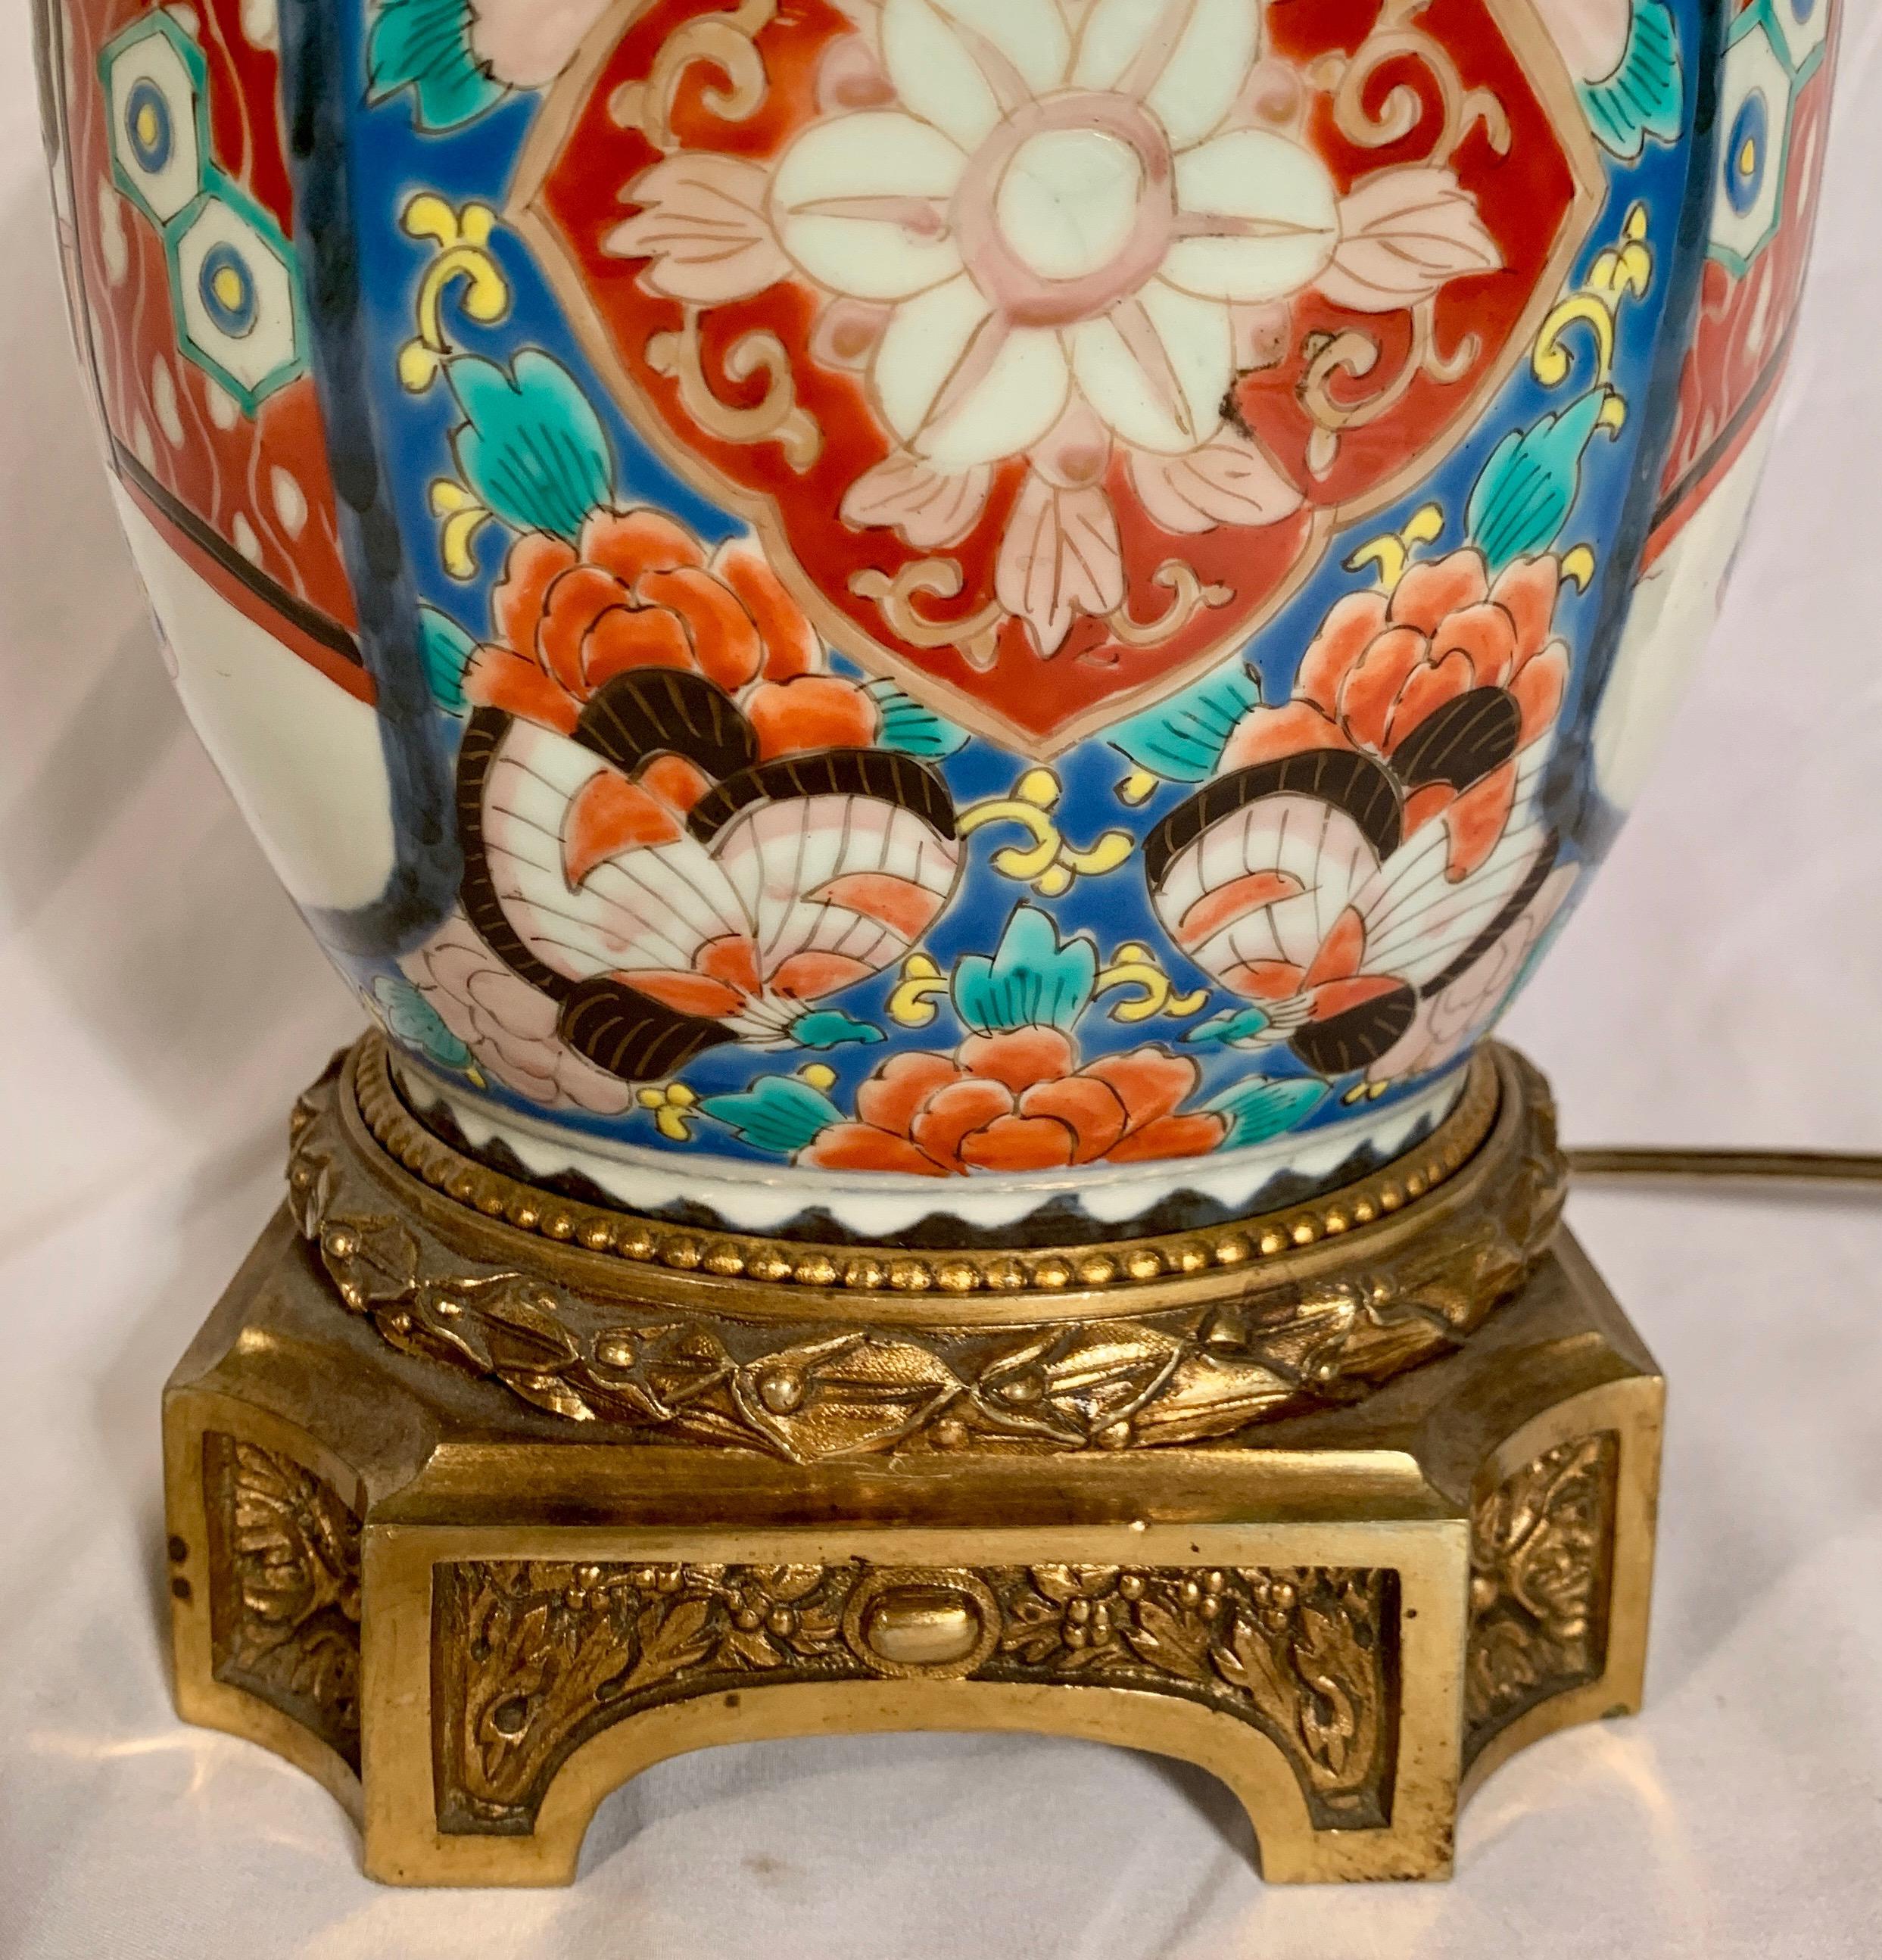 Diese schöne japanische Urne wurde in eine Lampe umgewandelt. Die Farben der Porzellanurne bleiben kräftig und das Design scharf. 
